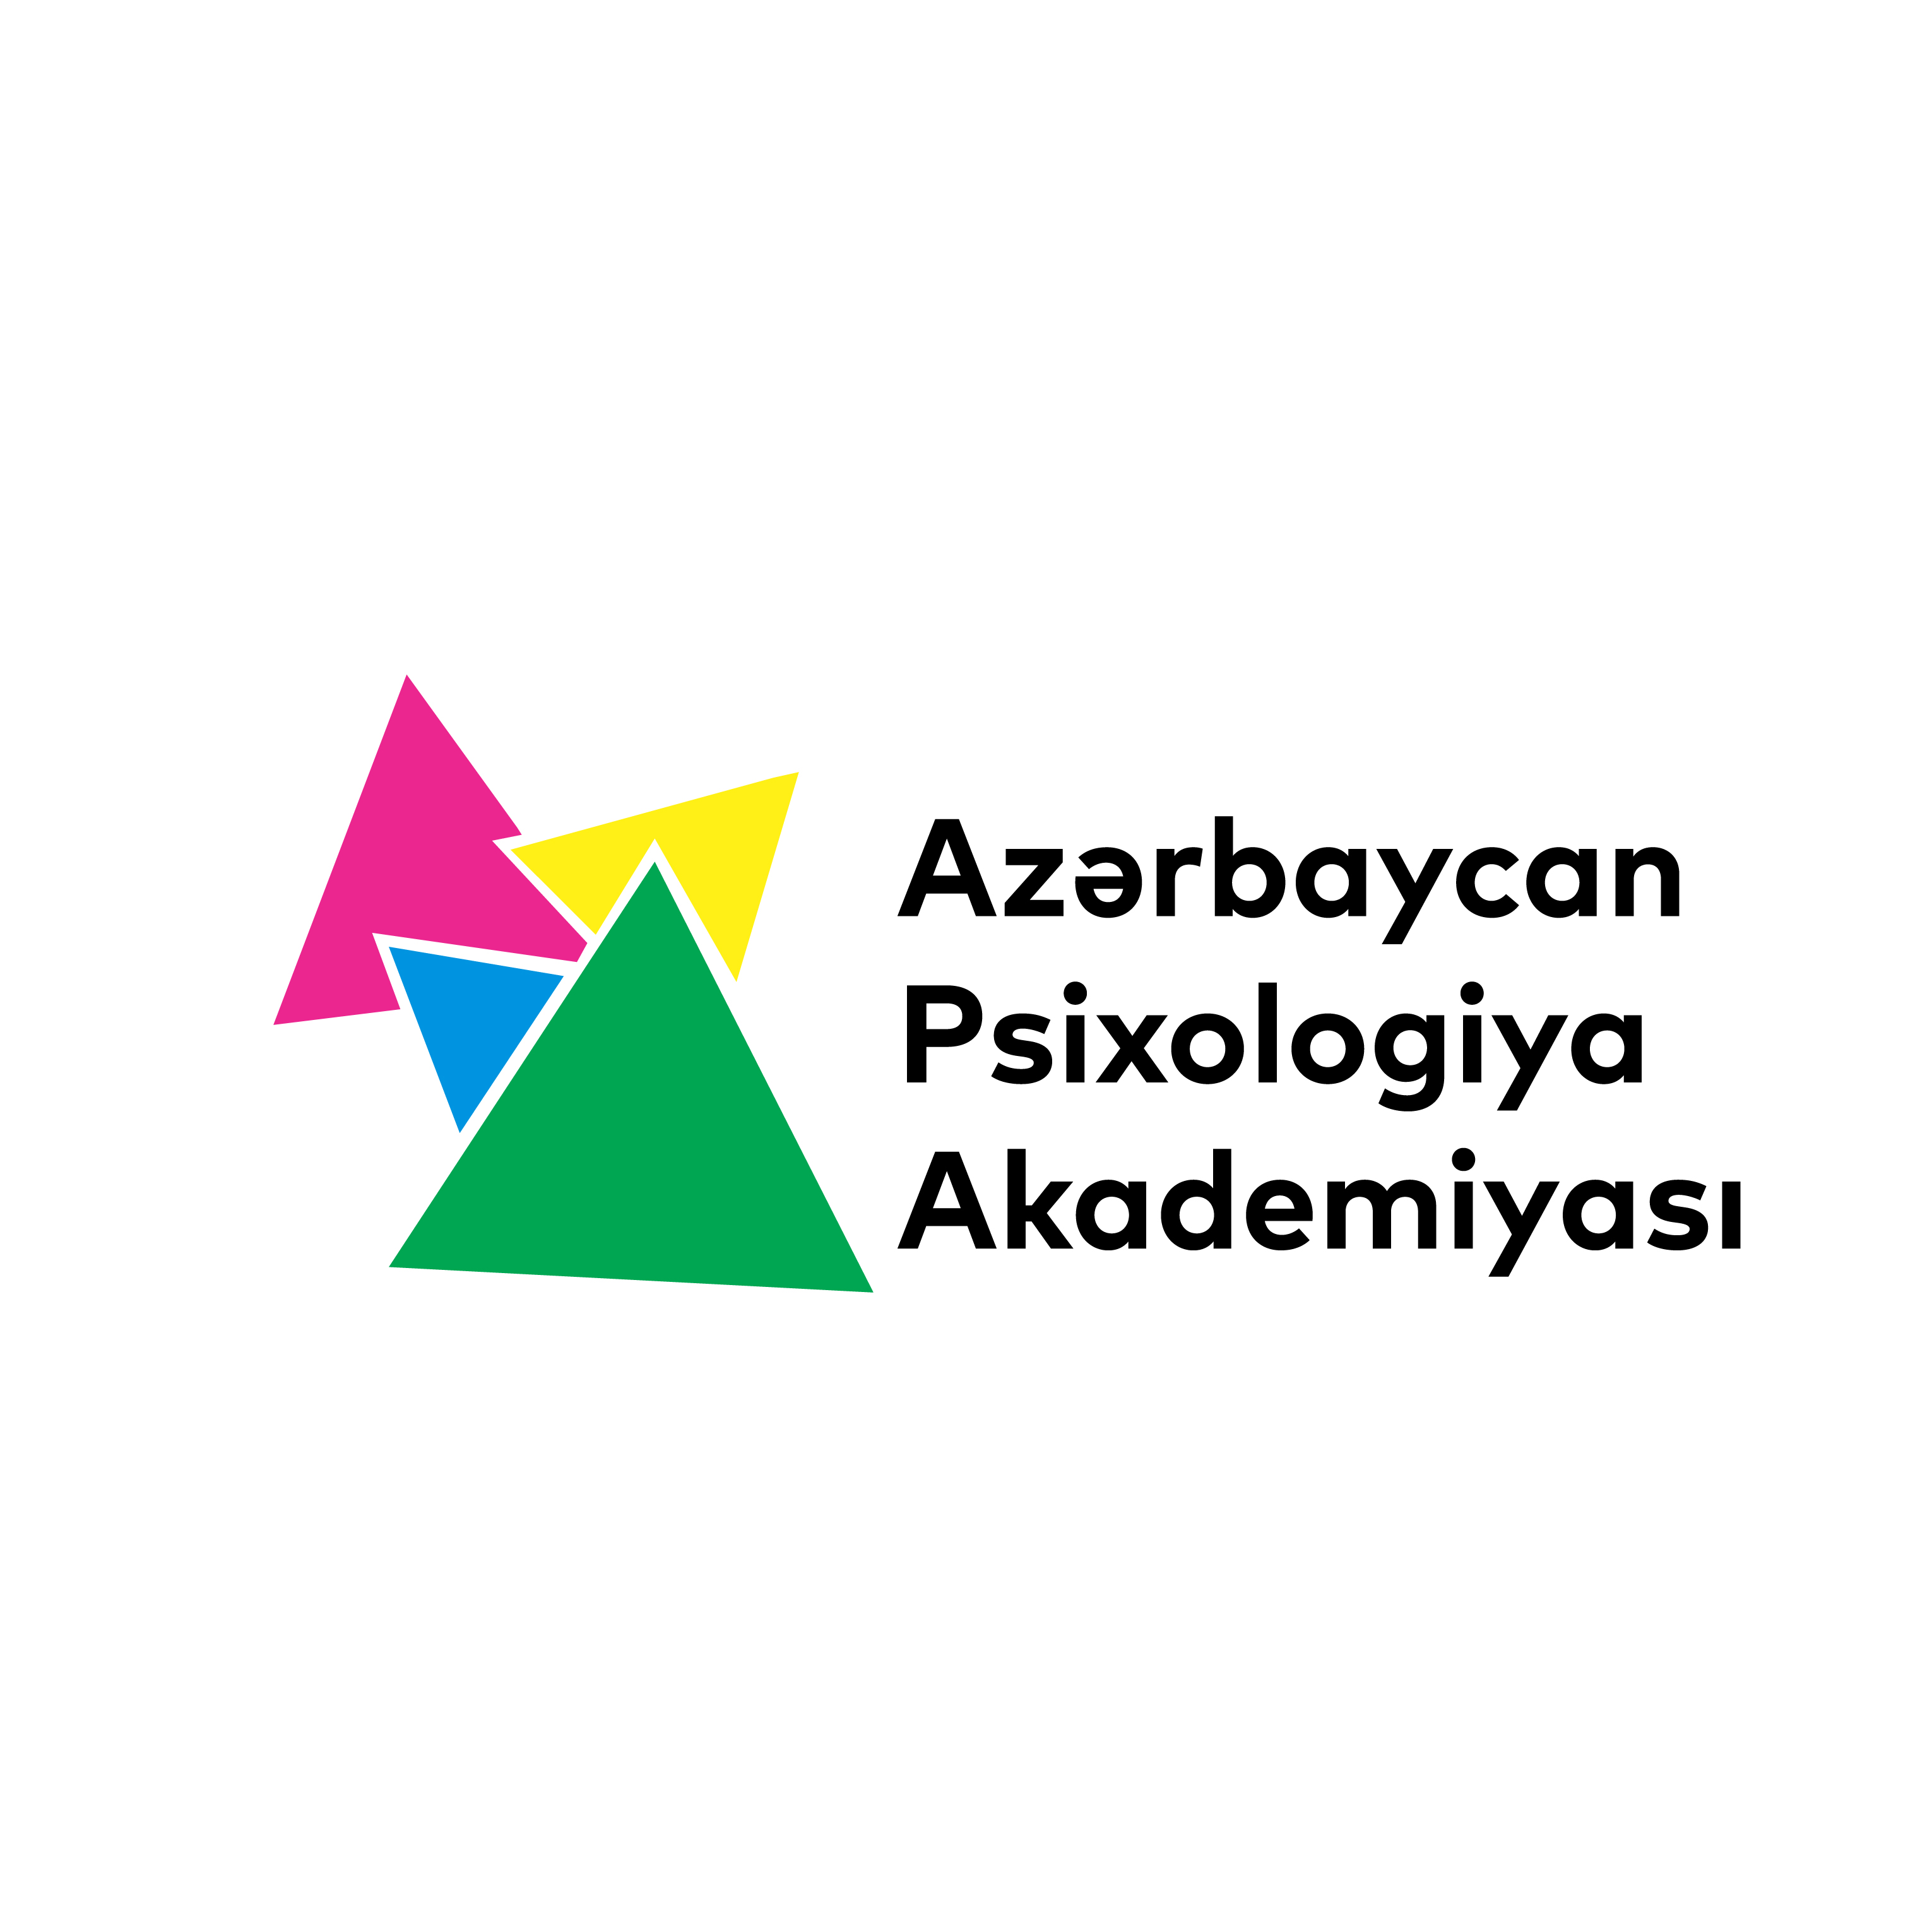 Azərbaycan Psixologiya Akademiyasi (APAK) “Açıq qapı” günü elan edir.